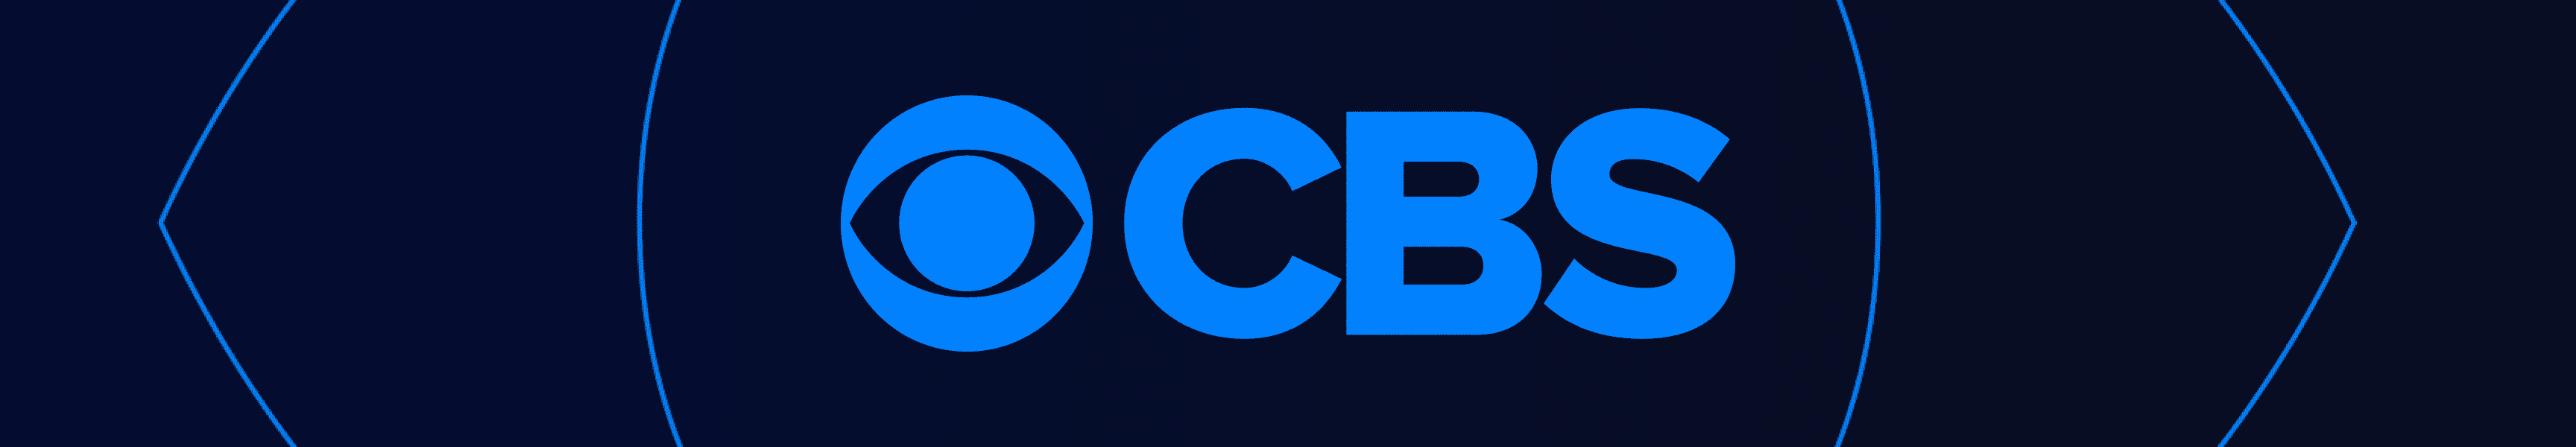 CBS Entertainment Chapeaux